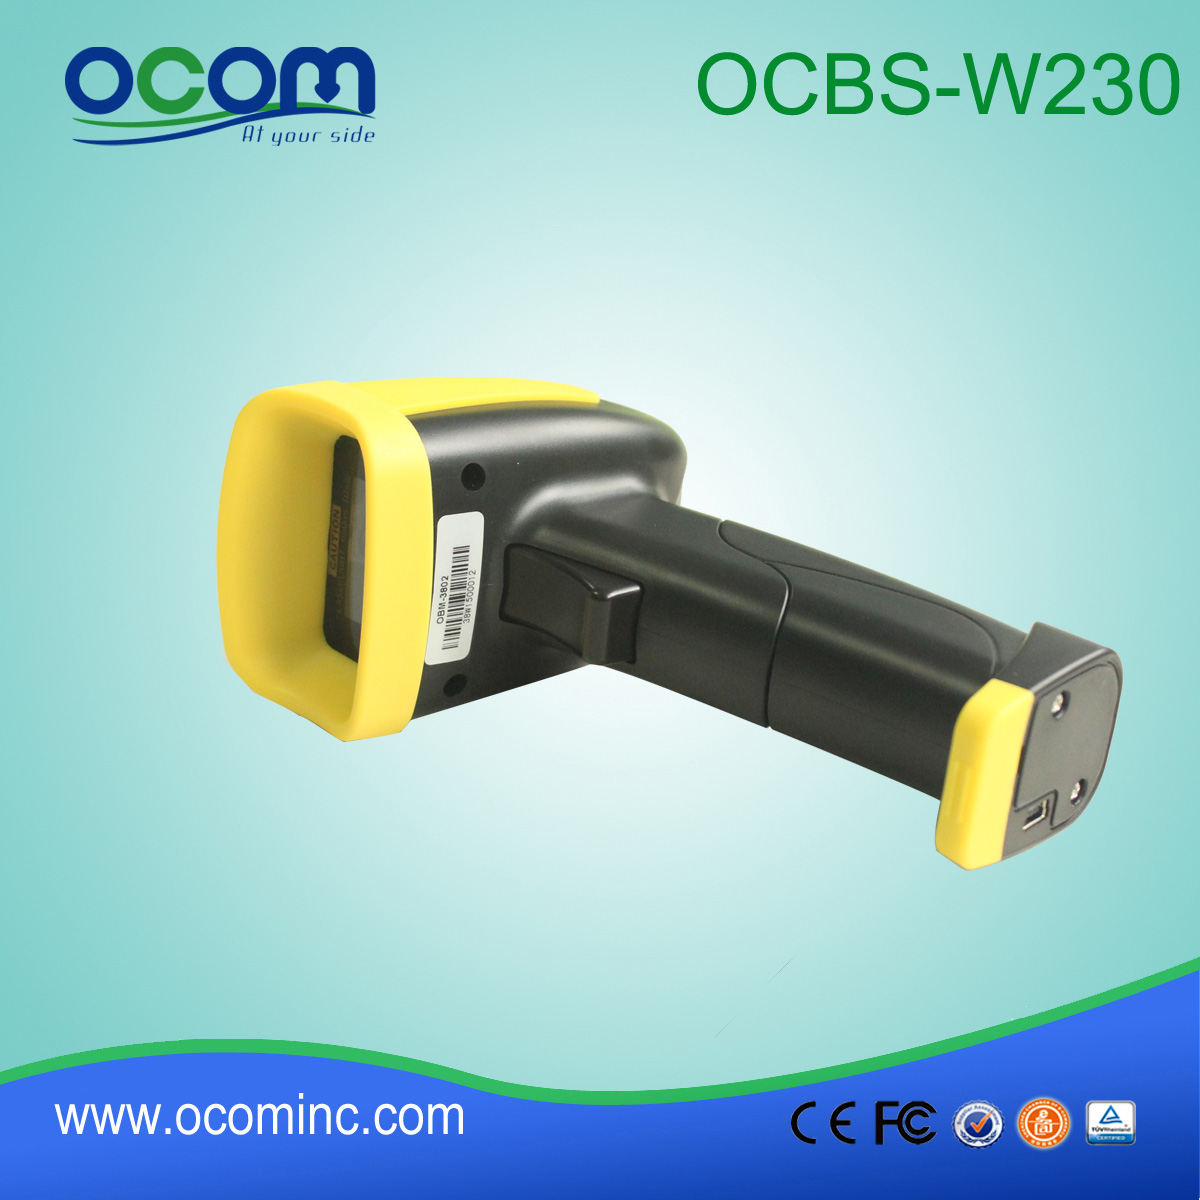 手持式无线激光条形码扫描仪模块 OCBS-W230